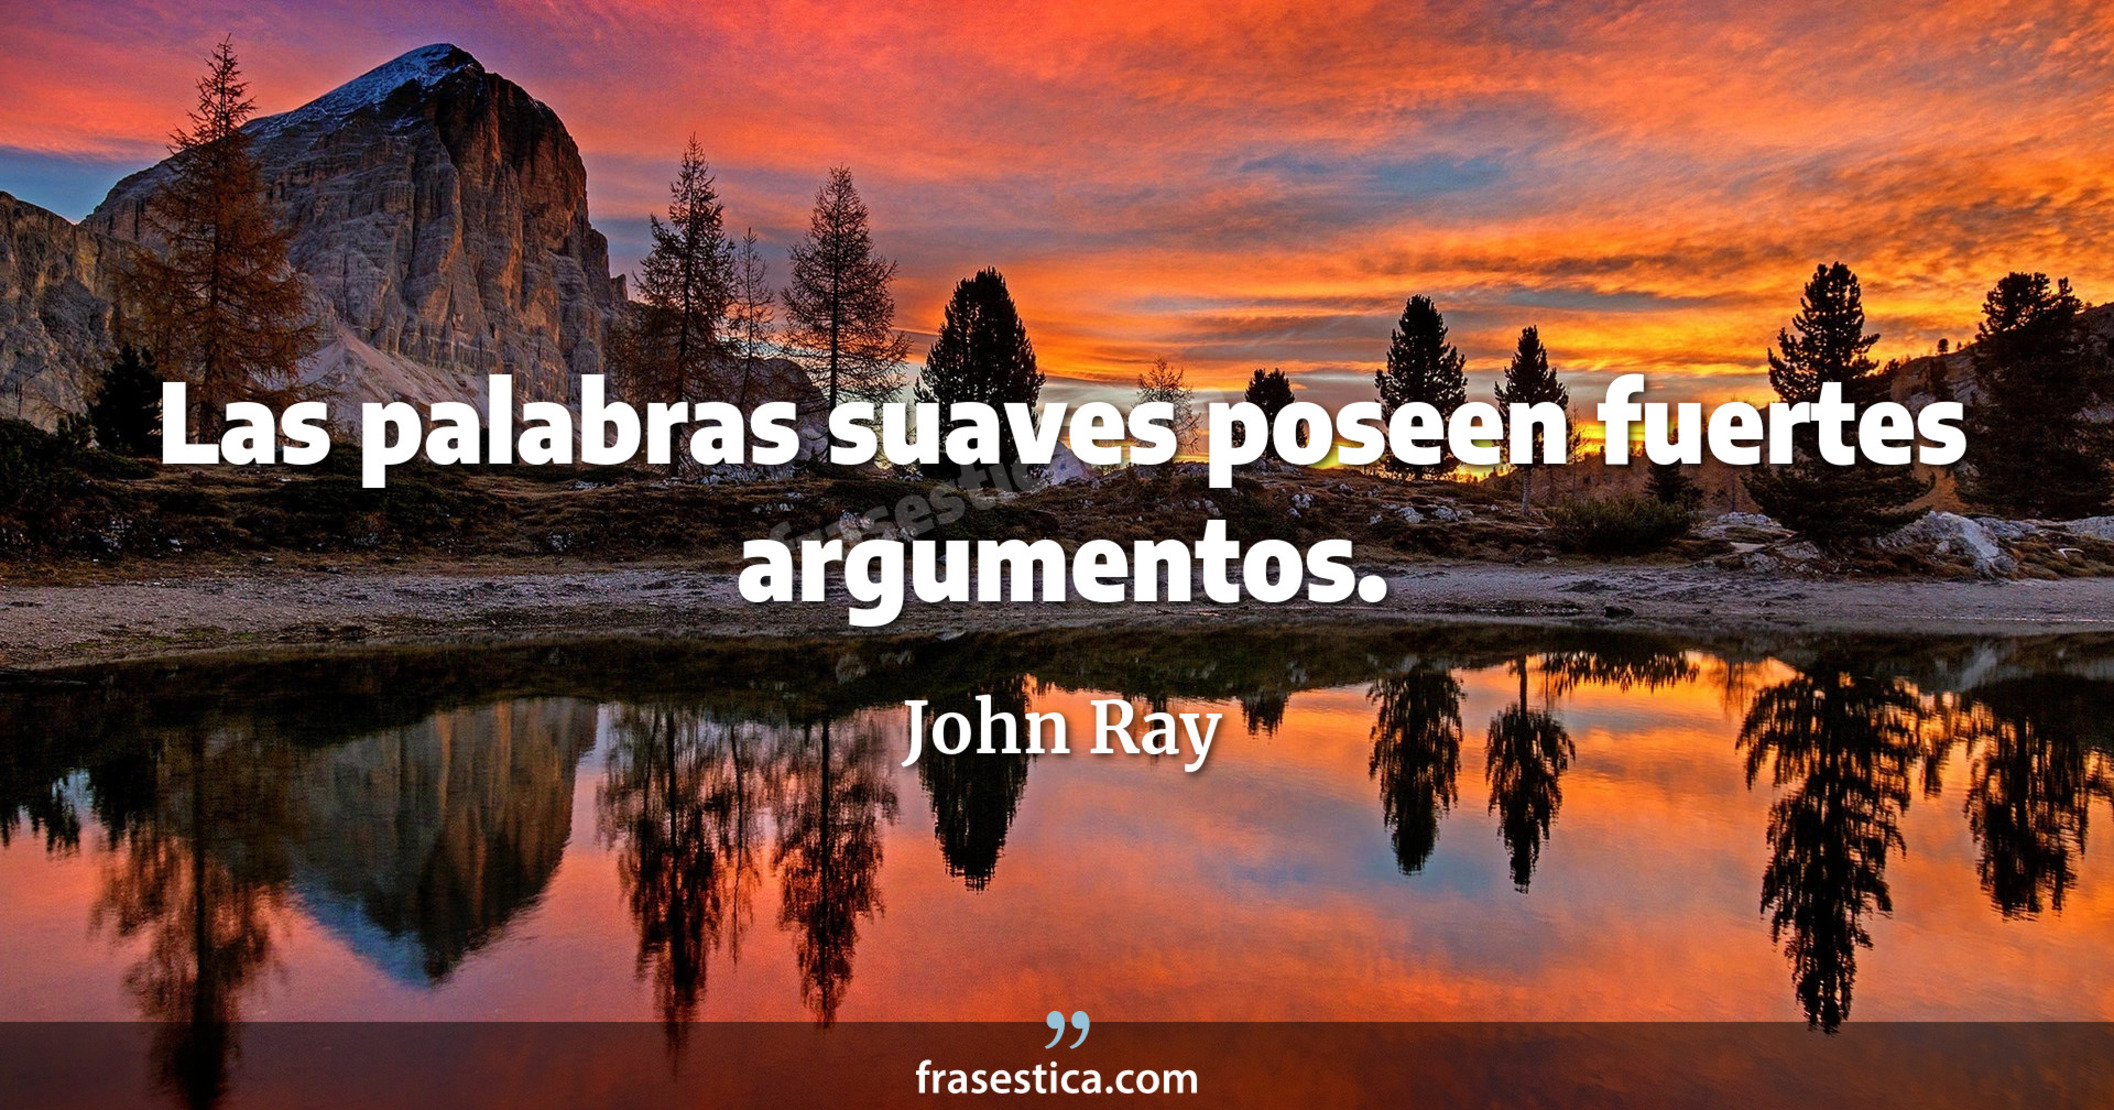 Las palabras suaves poseen fuertes argumentos.  - John Ray